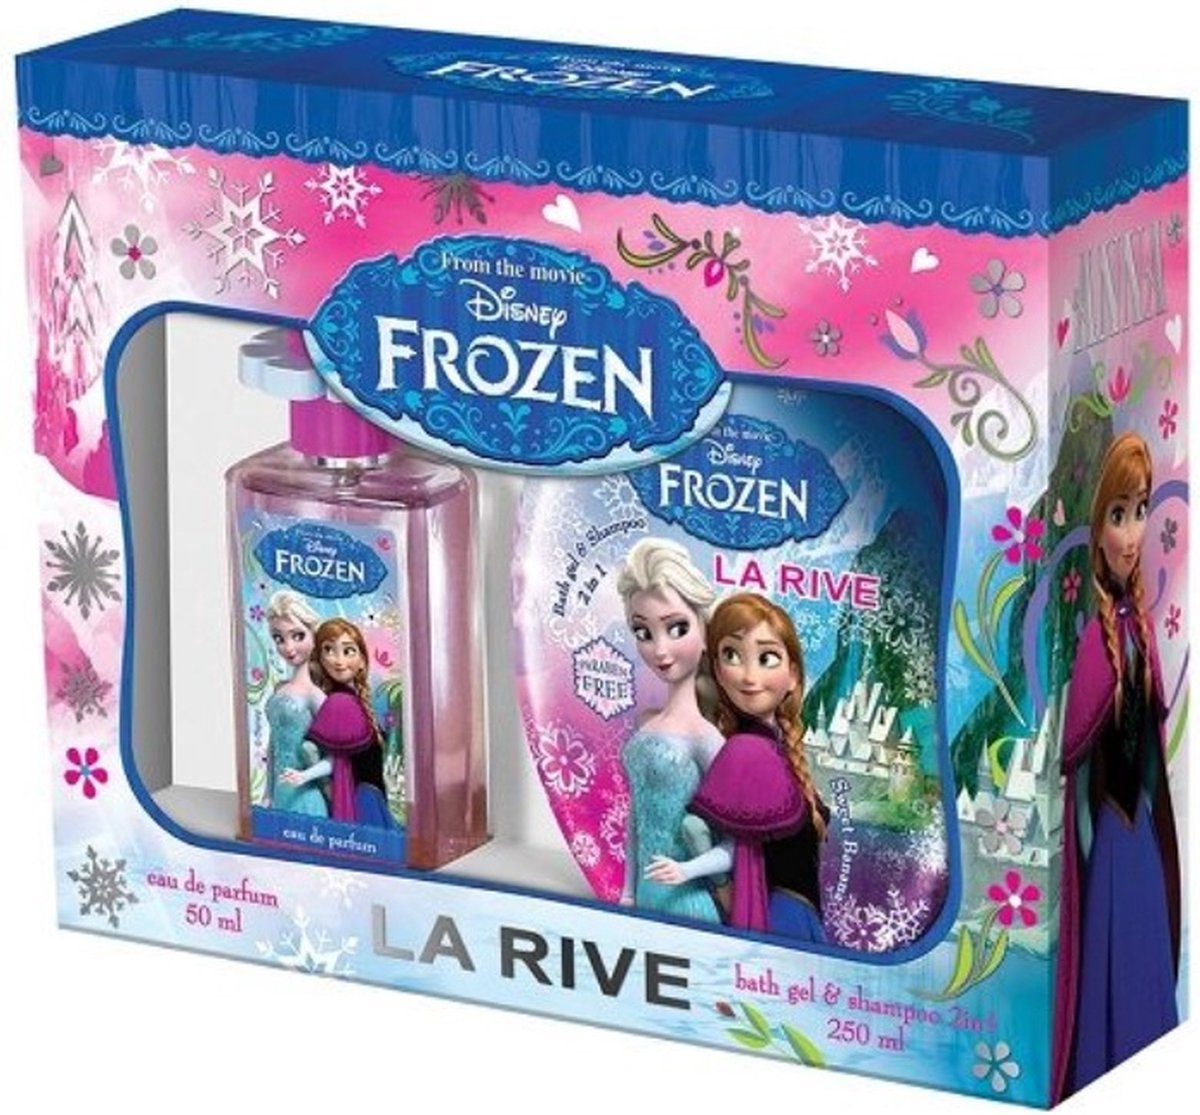 La Rive - Disney Frozen EDP 50ml + Bath Gel & Shampoo - 250ML